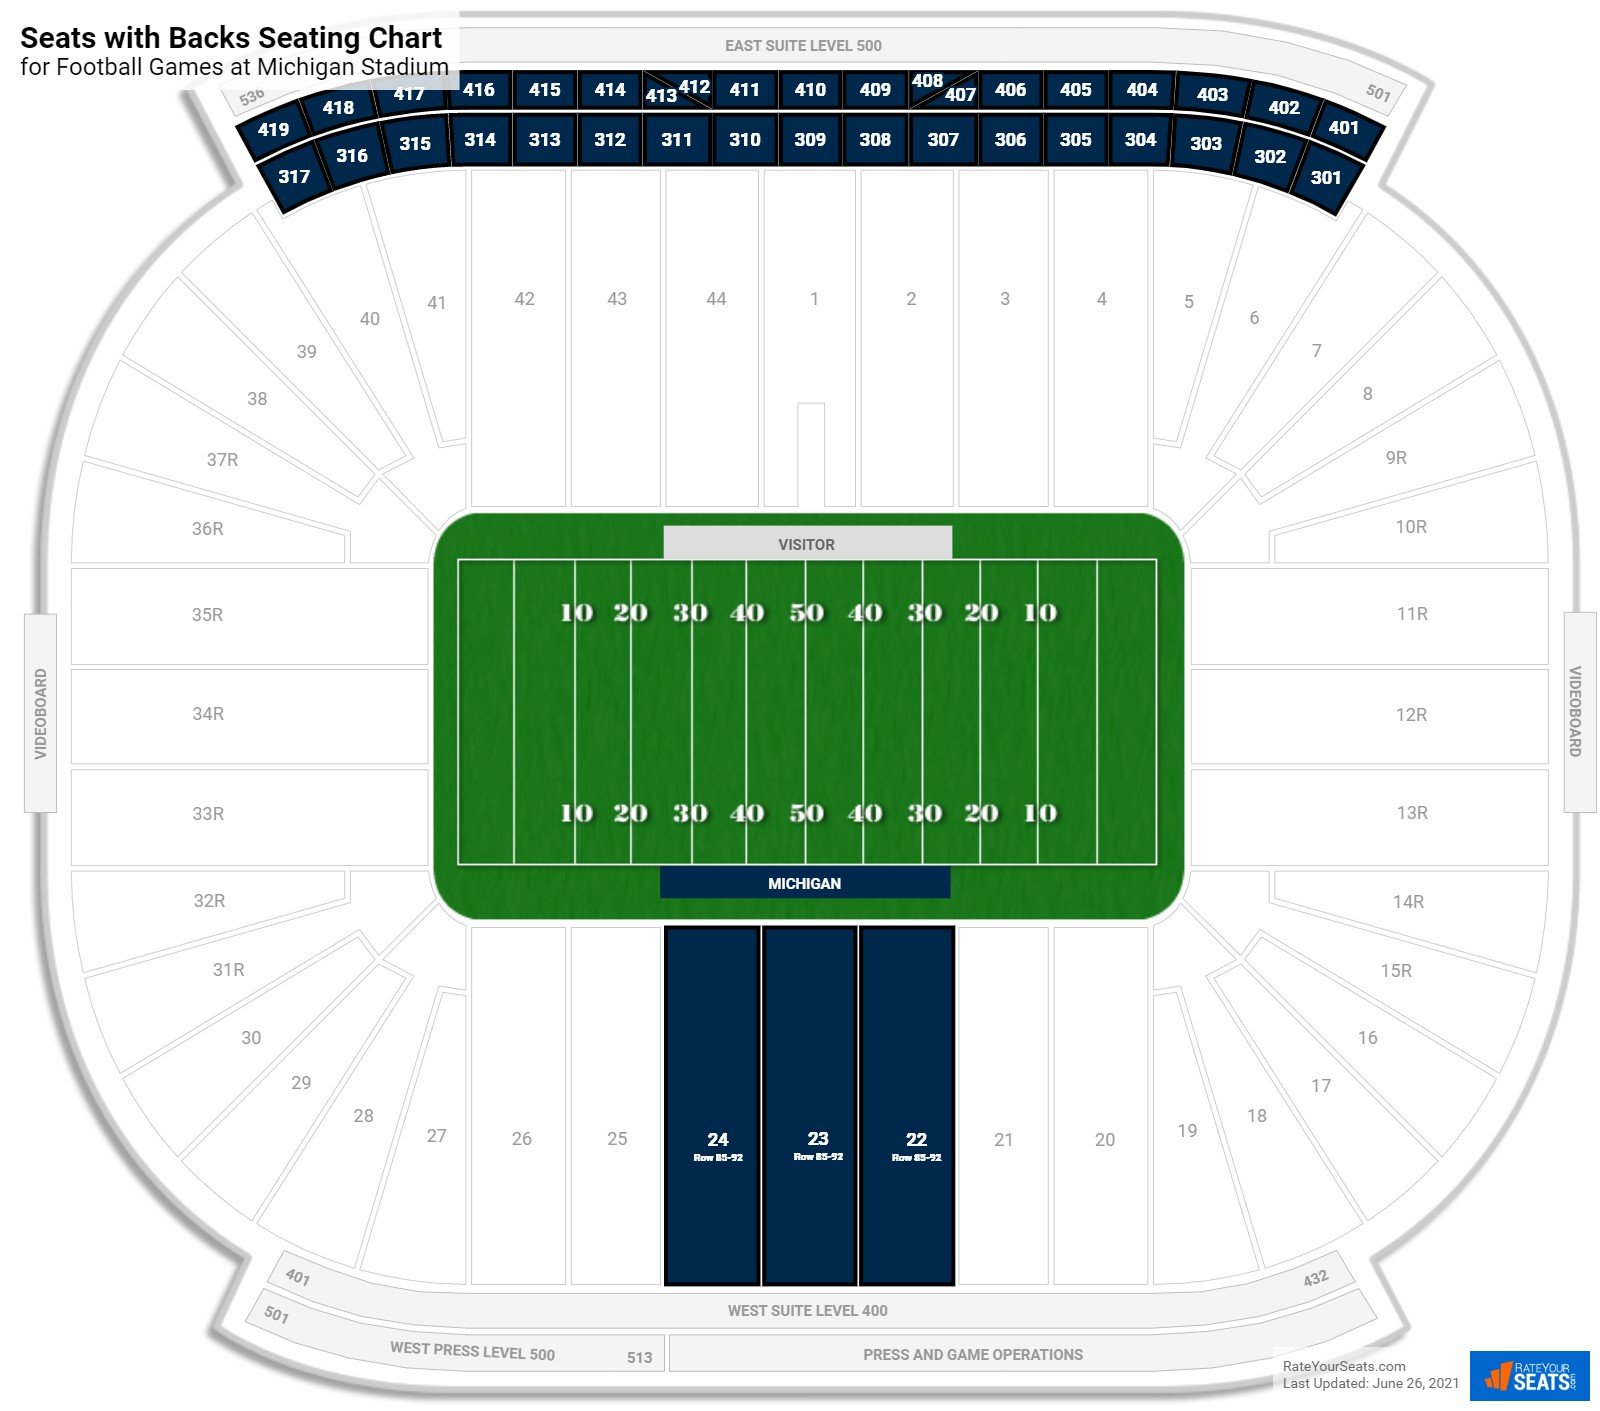 Football Seats with Backs Seating Chart at Michigan Stadium